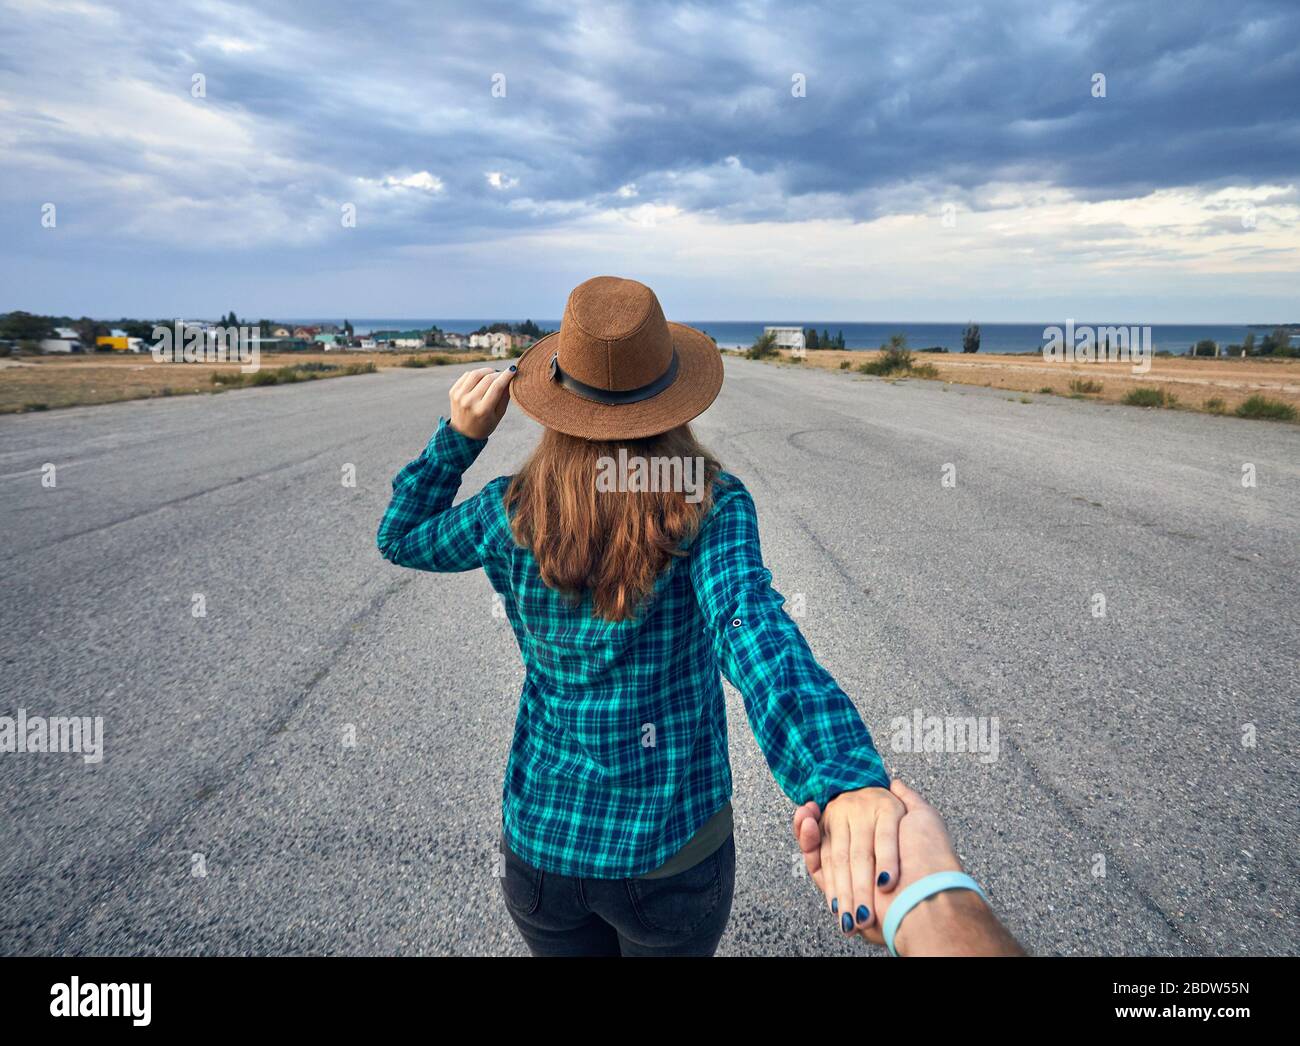 Glückliches Paar in kariertes Hemd Holding durch die Hände und laufen auf dem breiten Asphaltstraße mit See und bewölkter Himmel Hintergrund Stockfoto